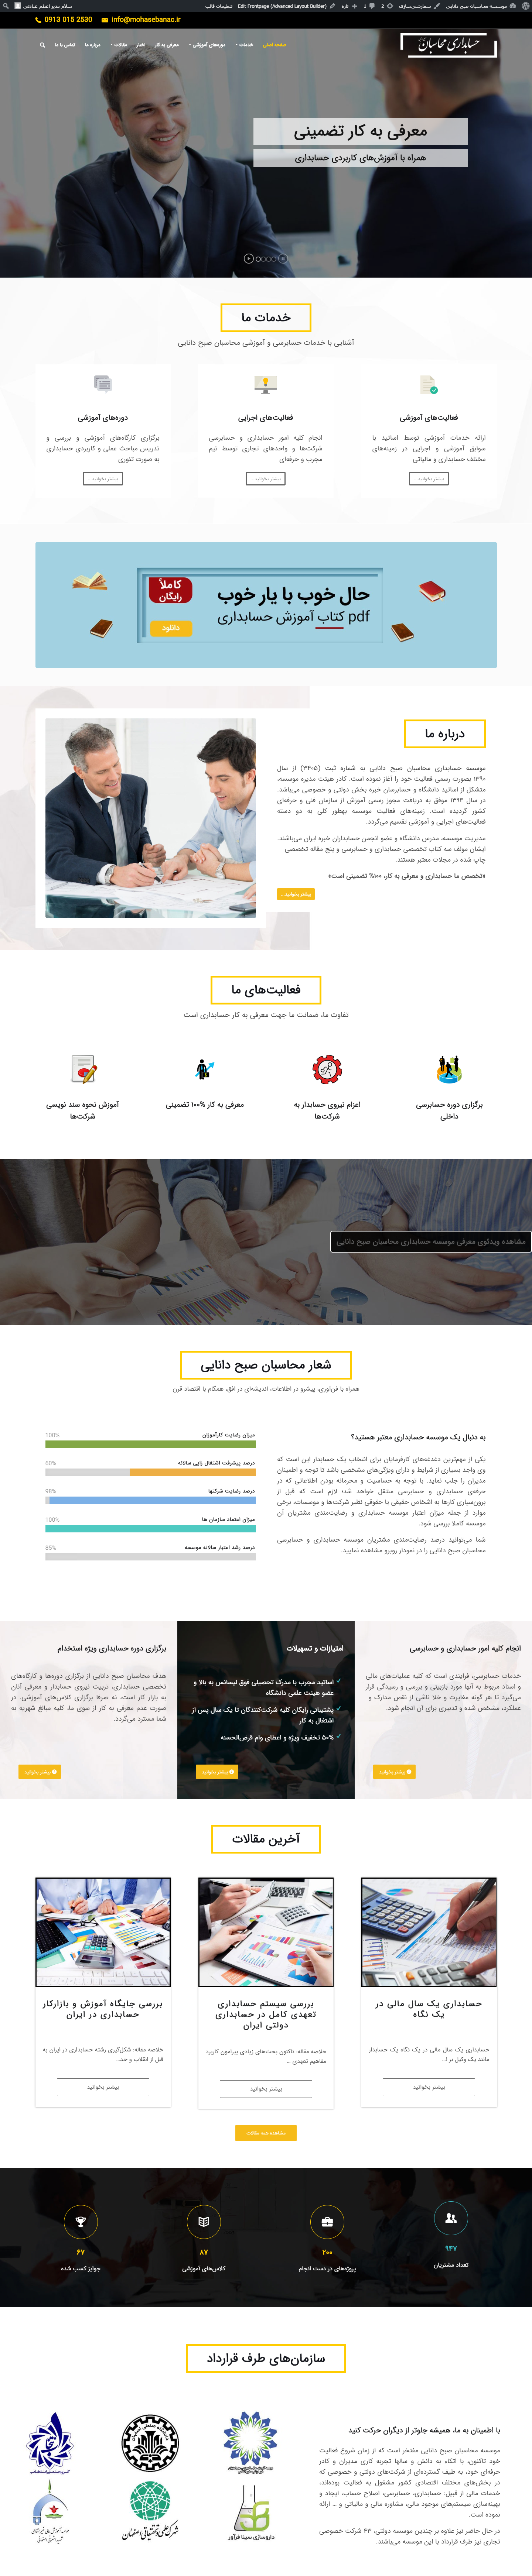 طراحی سایت موسسه حسابداری صبح دانایی | آموزشگاه حسابداری